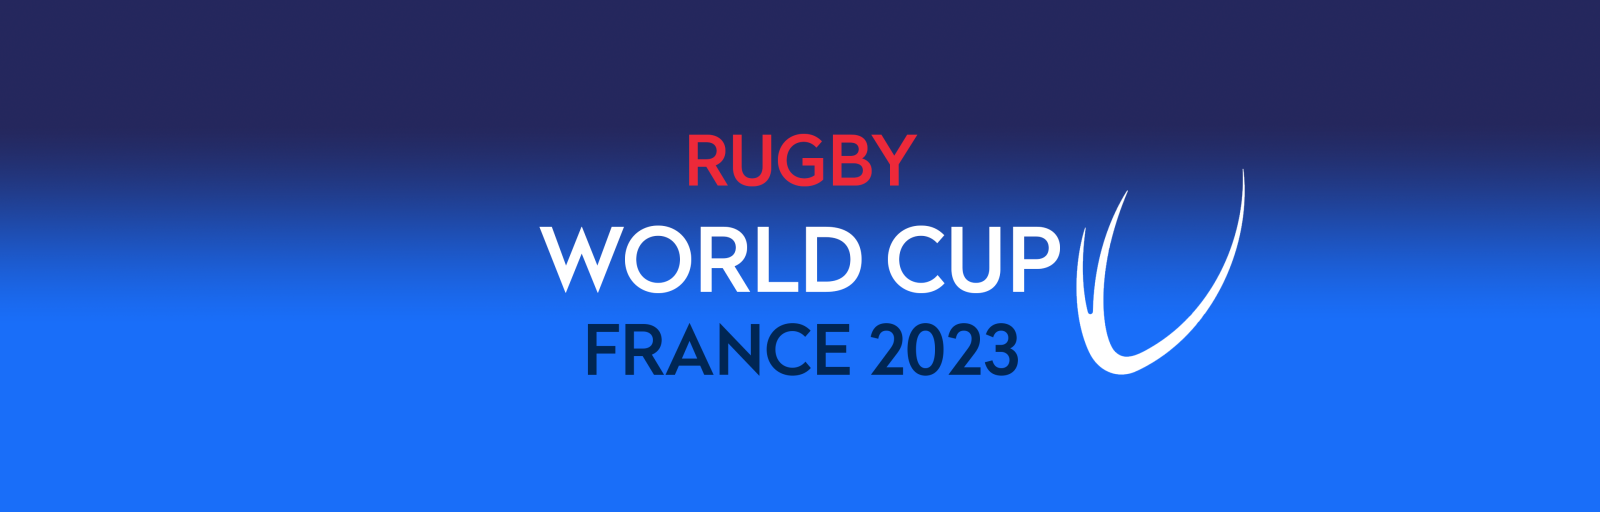 RWC France 2023